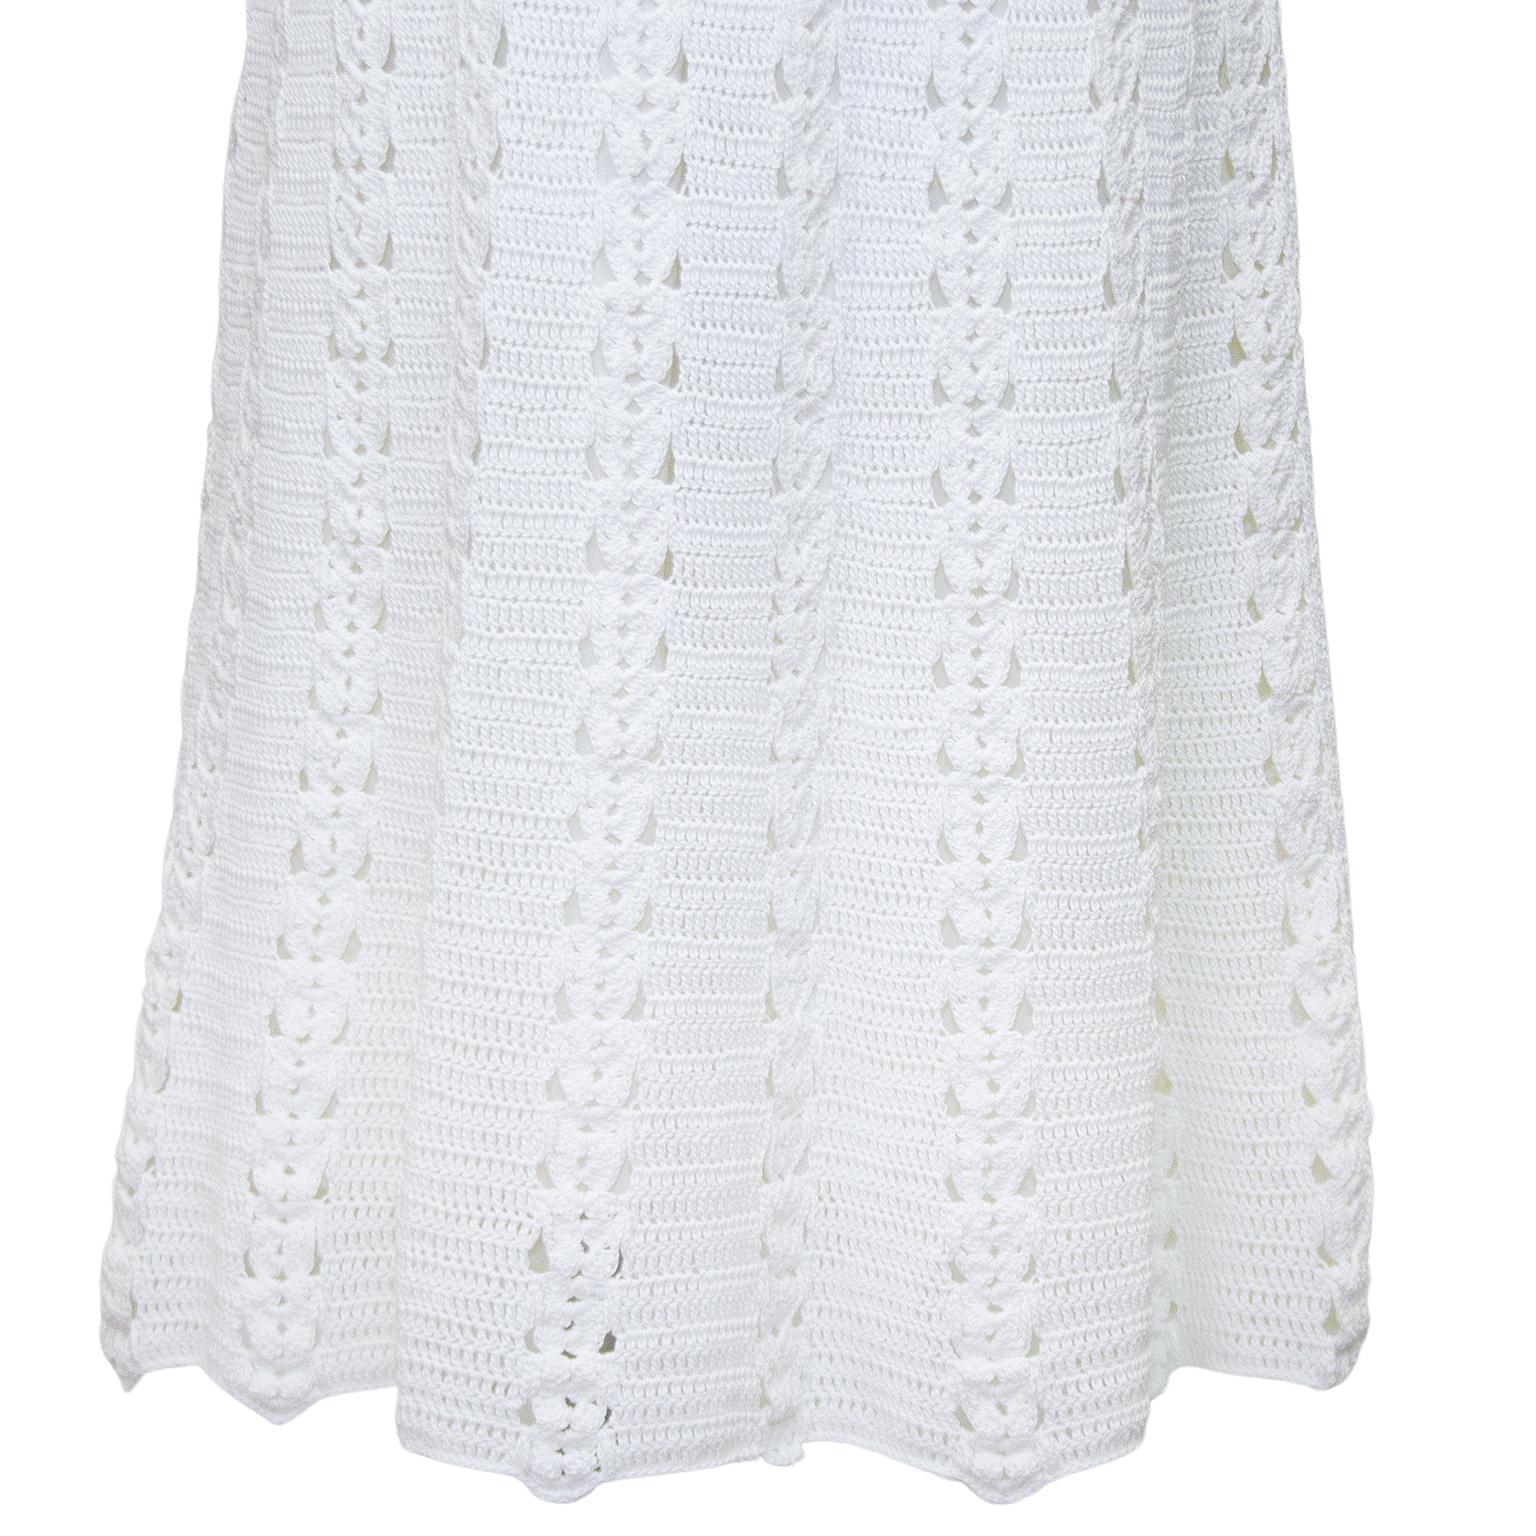 Women's 1970s Bohemian White Cotton Crochet Dress 